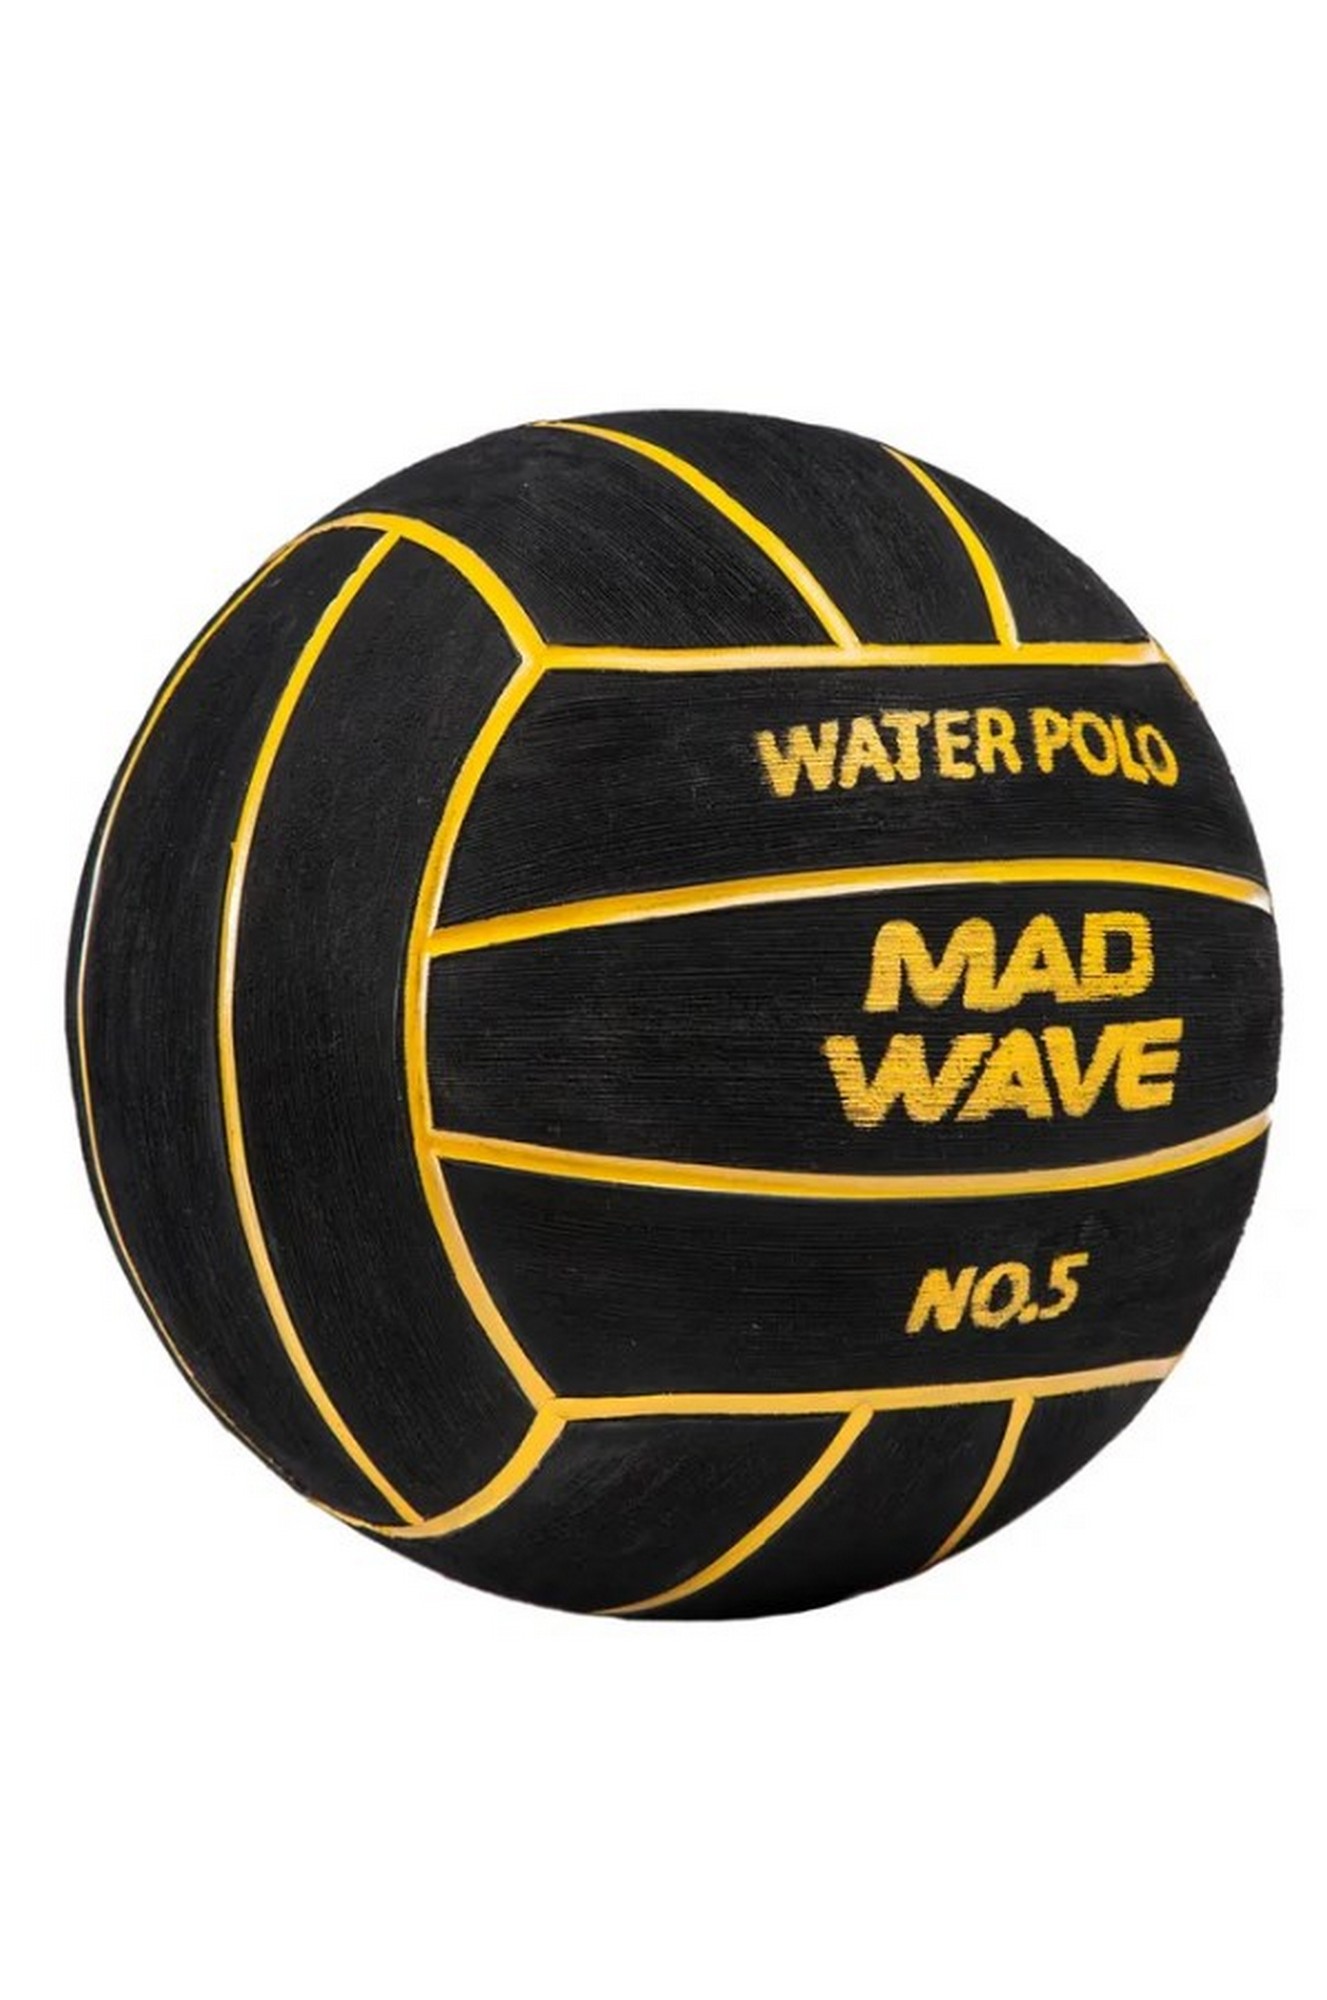 Мяч для водного поло Mad Wave WP Official #5 M2230 01 5 01W 1327_2000